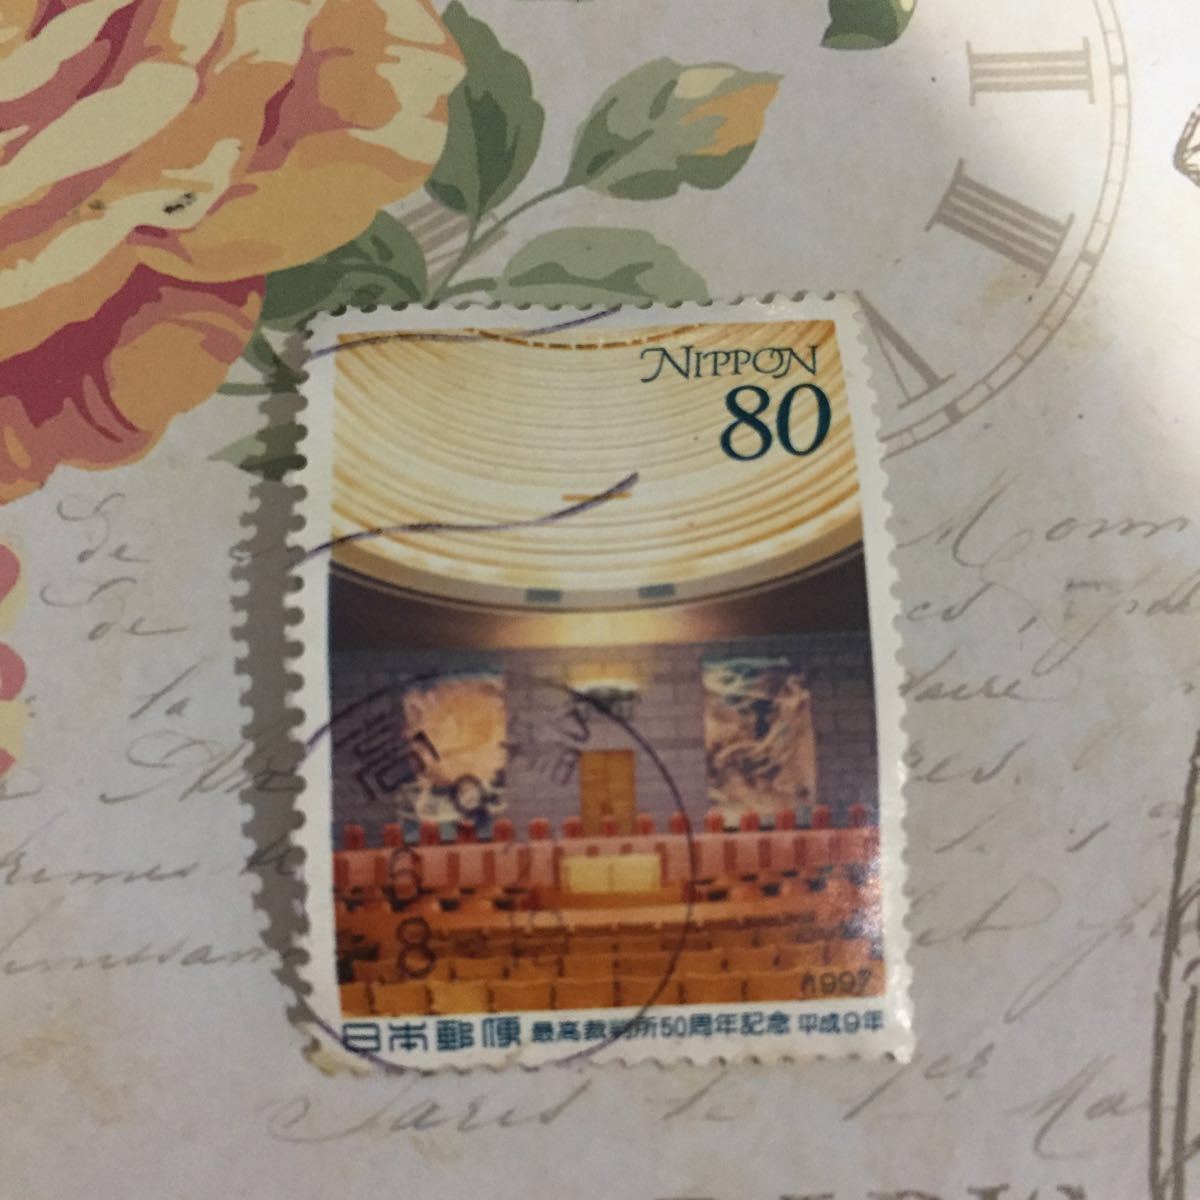 使用済み 80円切手 満月印 最高裁判所50周年記念_画像1